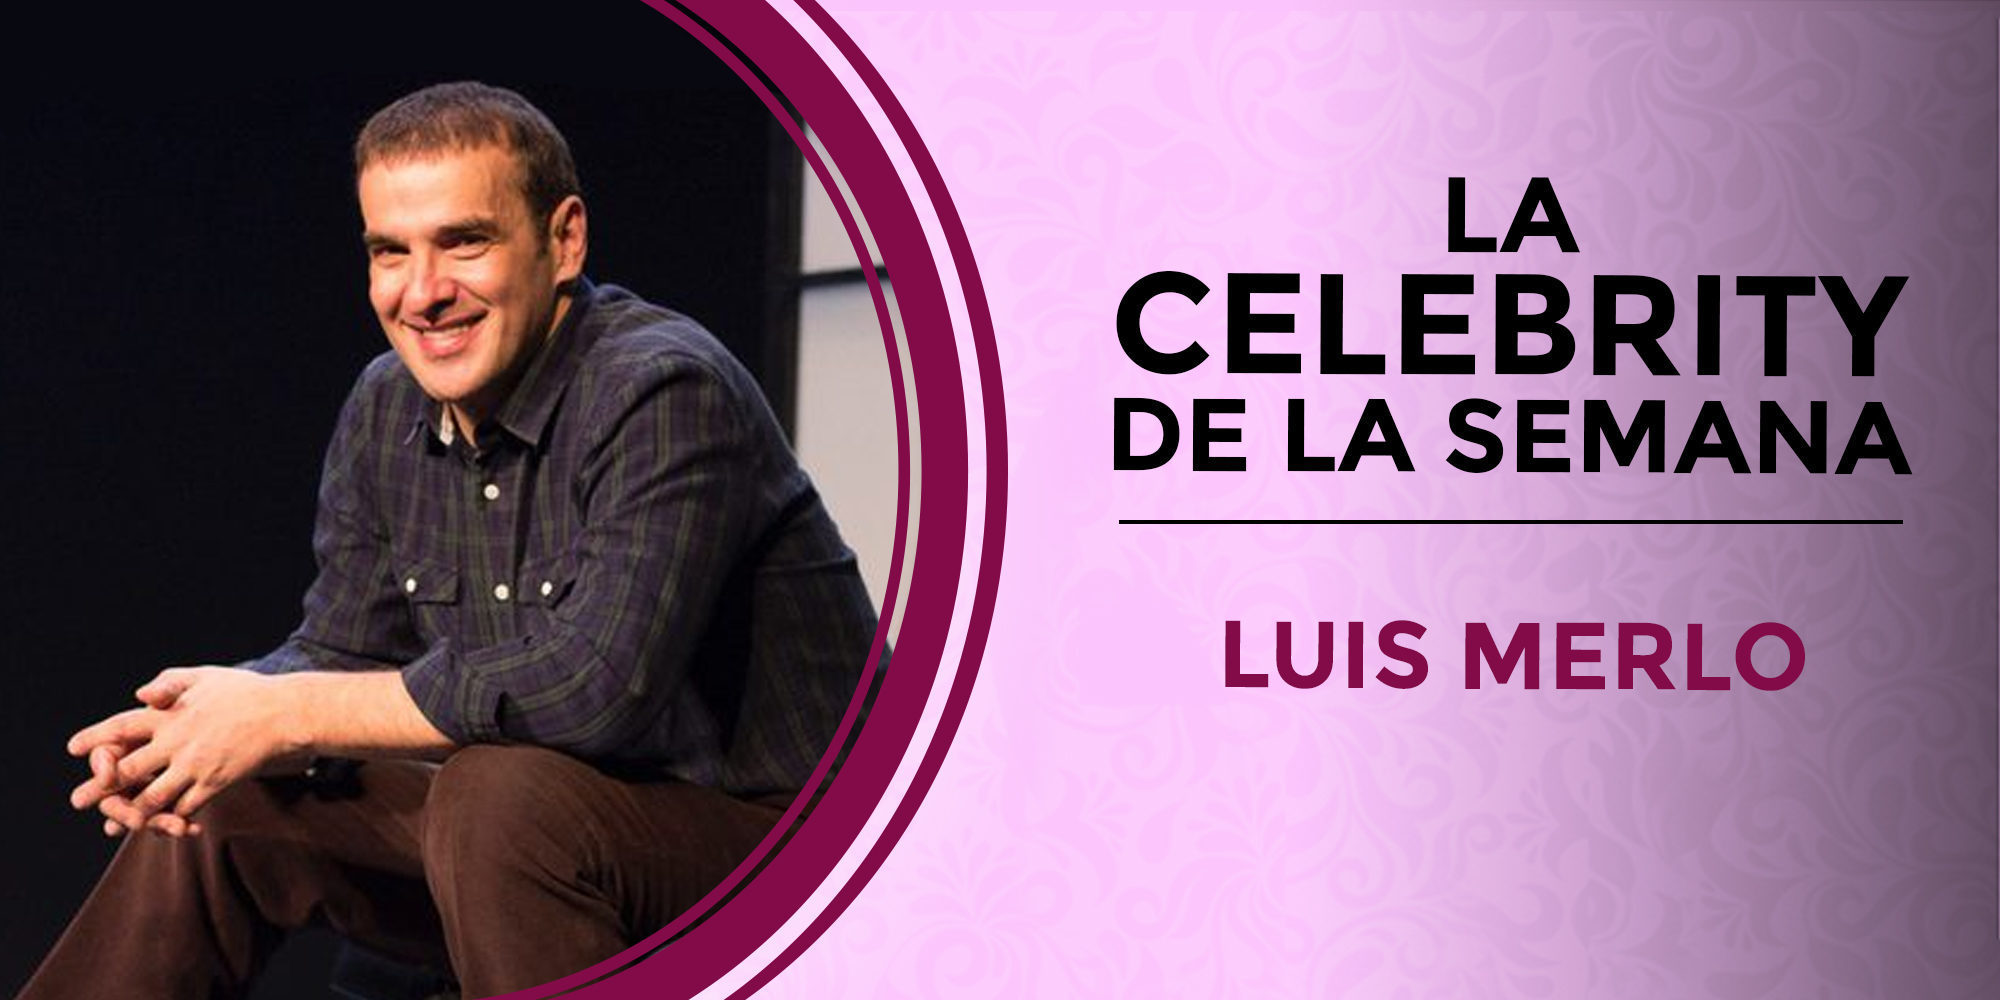 Luis Merlo se convierte en la celebrity de la semana por su ingreso hospitalario y su rápida recuperación